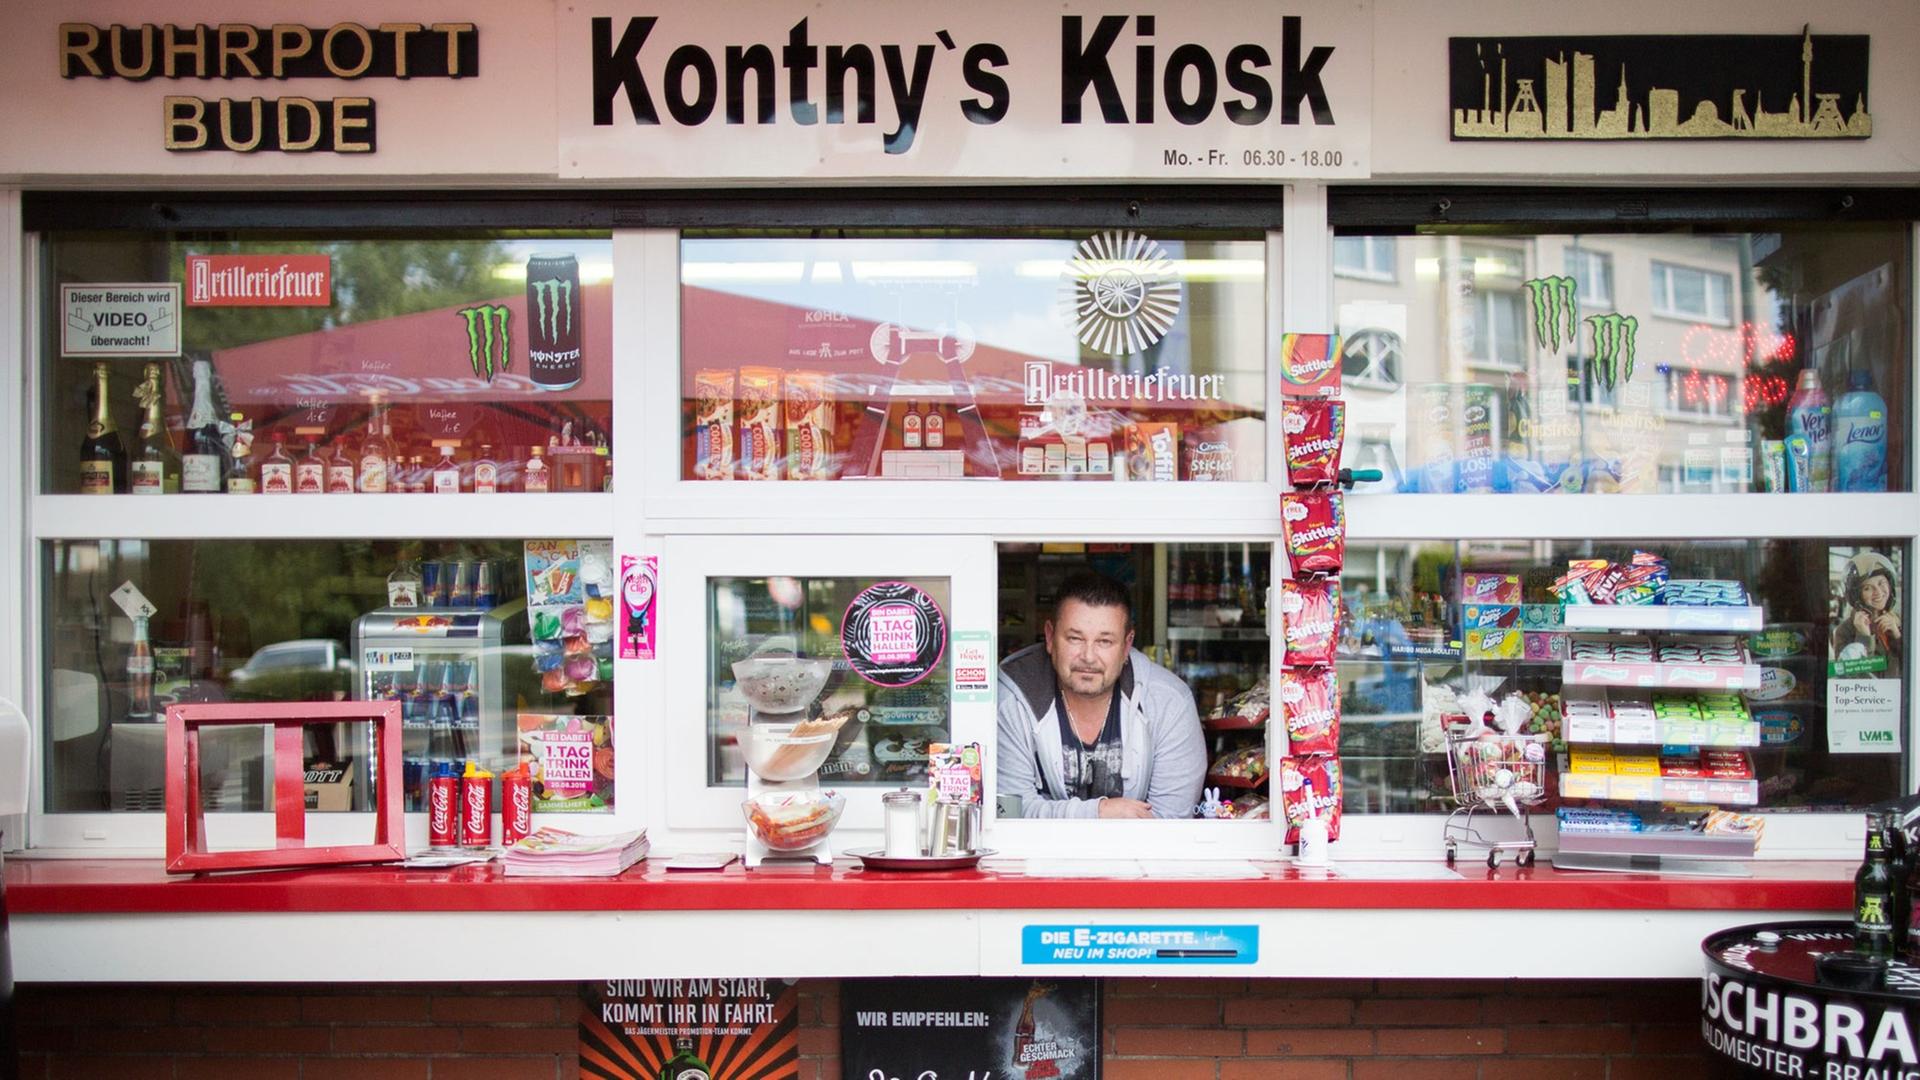 Kioskbesitzer Andreas Kontny posiert am 15.08.2016 in Kontny's Kiosk in Mülheim an der Ruhr (Nordrhein-Westfalen). Am 20.08.2016 soll am 1. Tag der Trinkhallen mit Auftritten von Künstlern die Buden-Kultur im Ruhrgebiet gefeiert werden